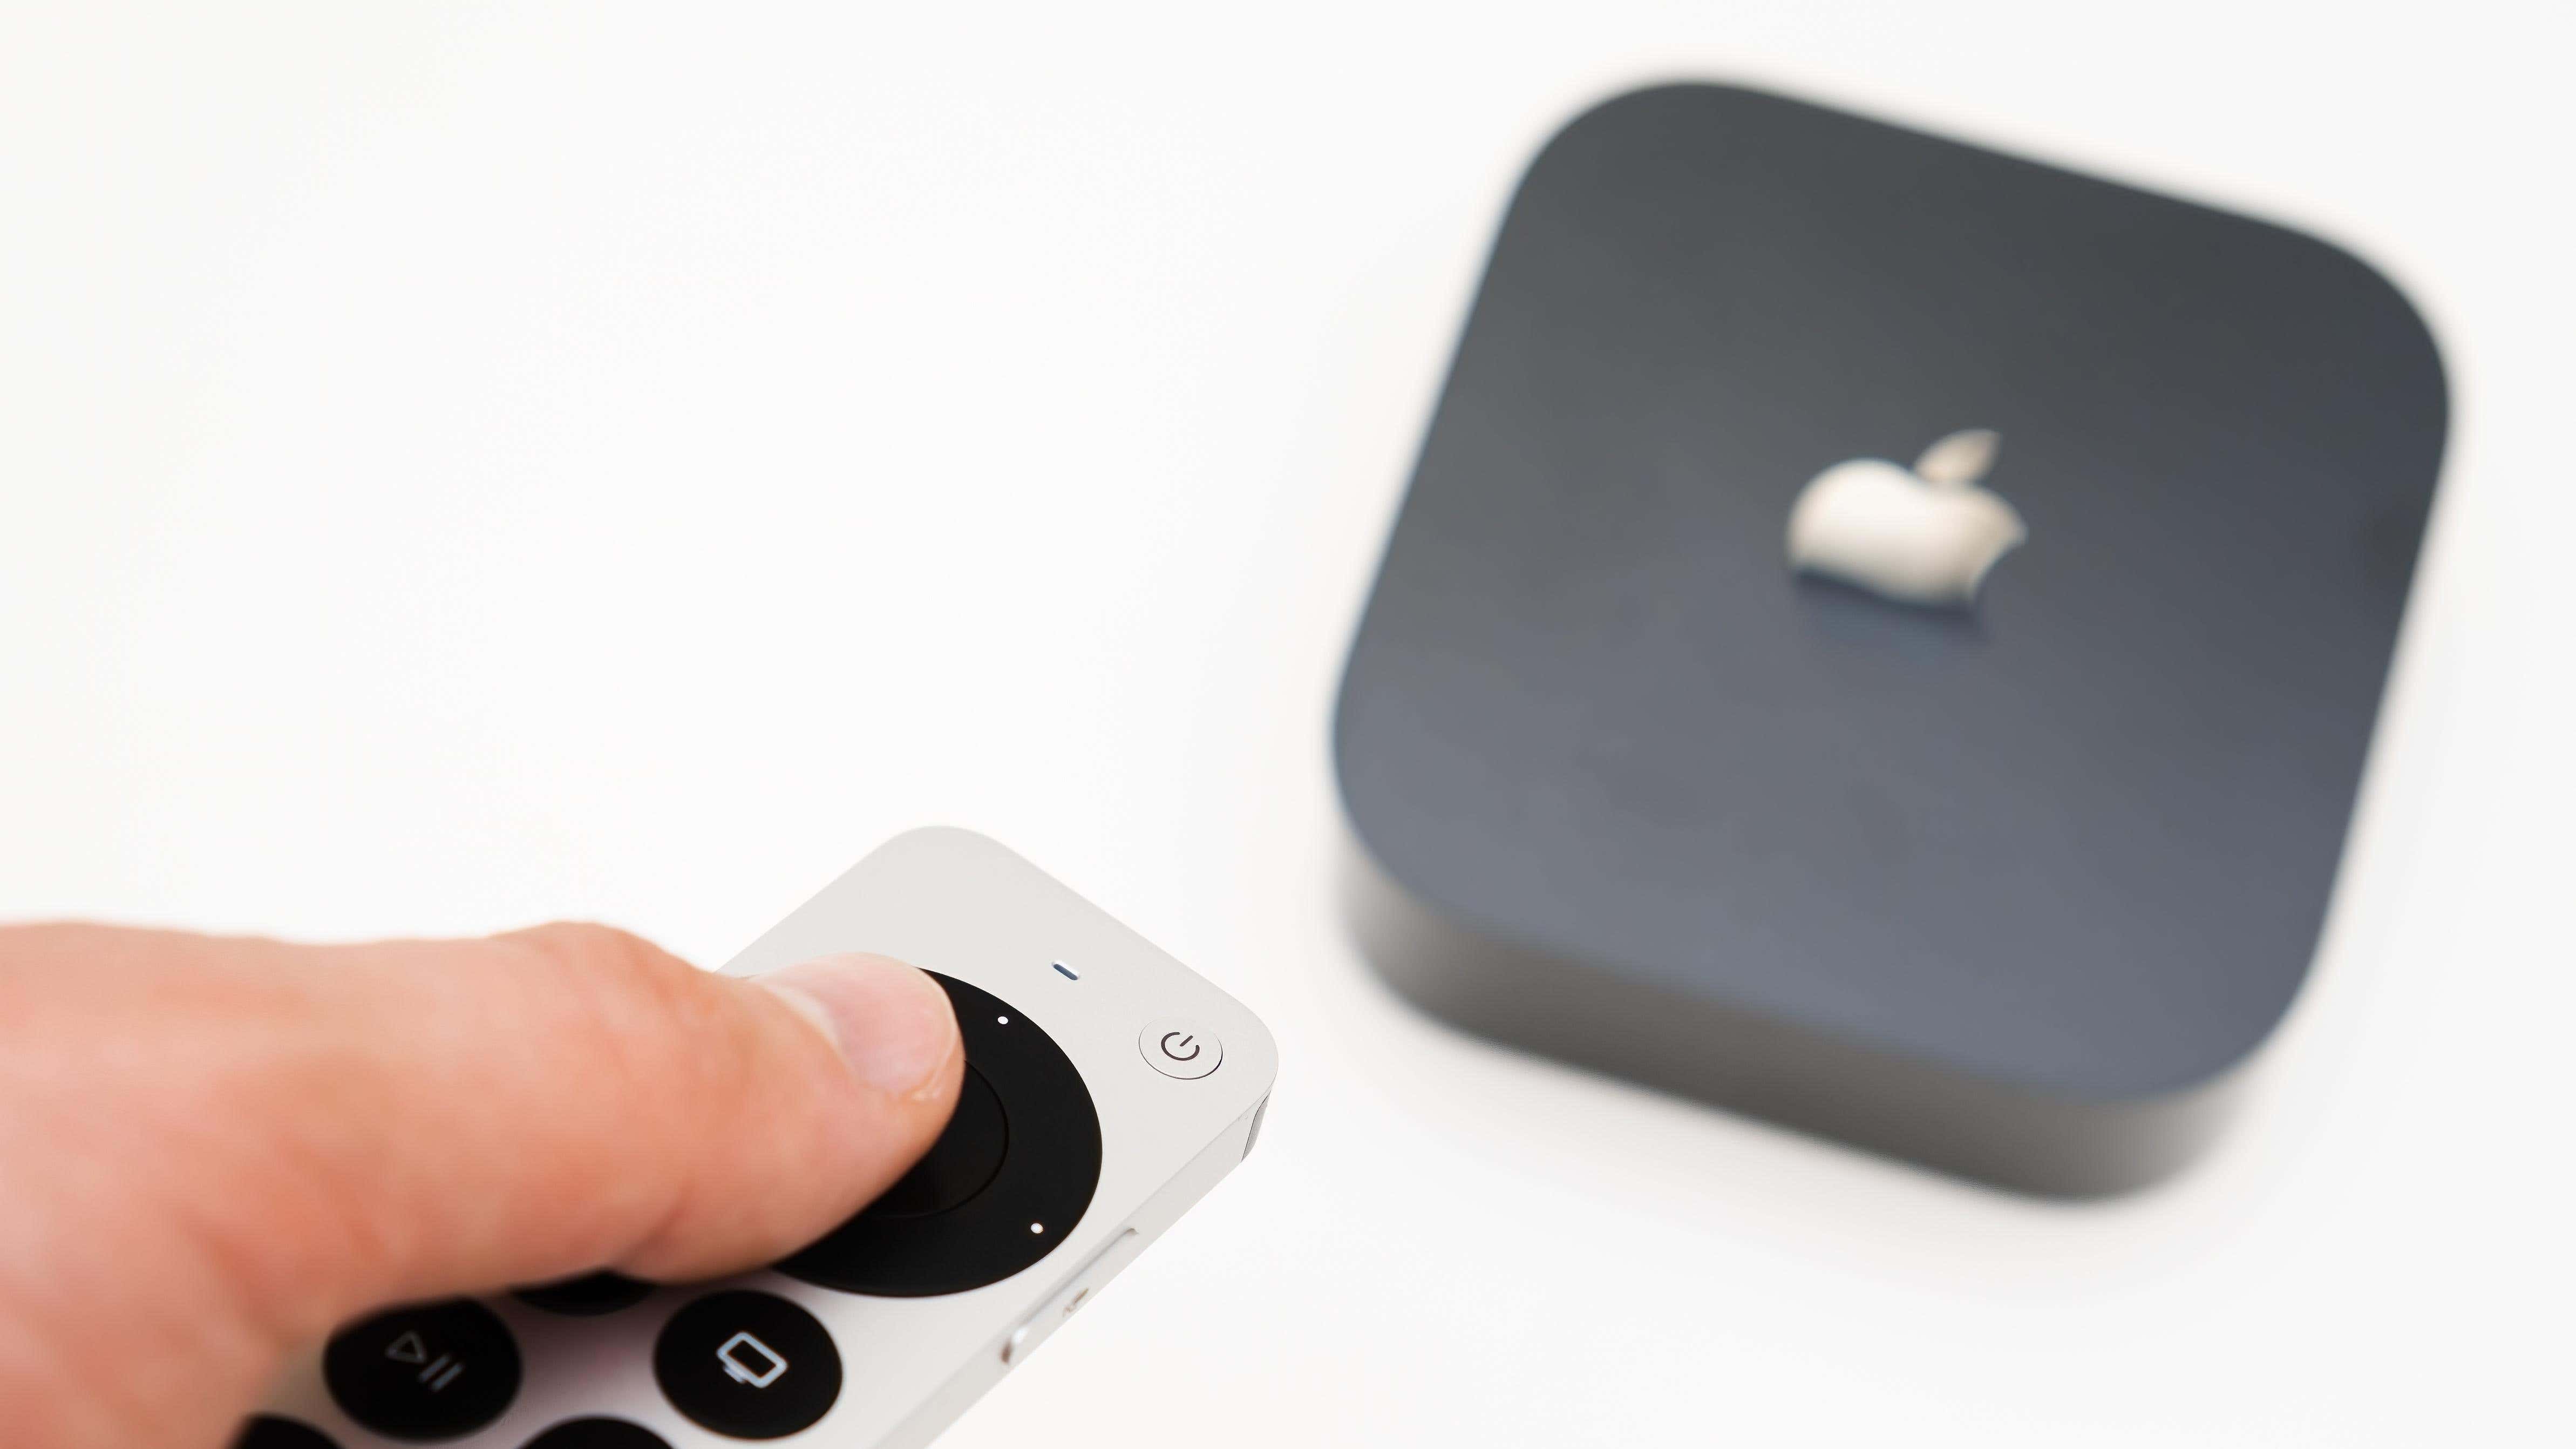 La mano del hombre enciende el nuevo streaming multimedia negro Apple TV 4K usando el control remoto